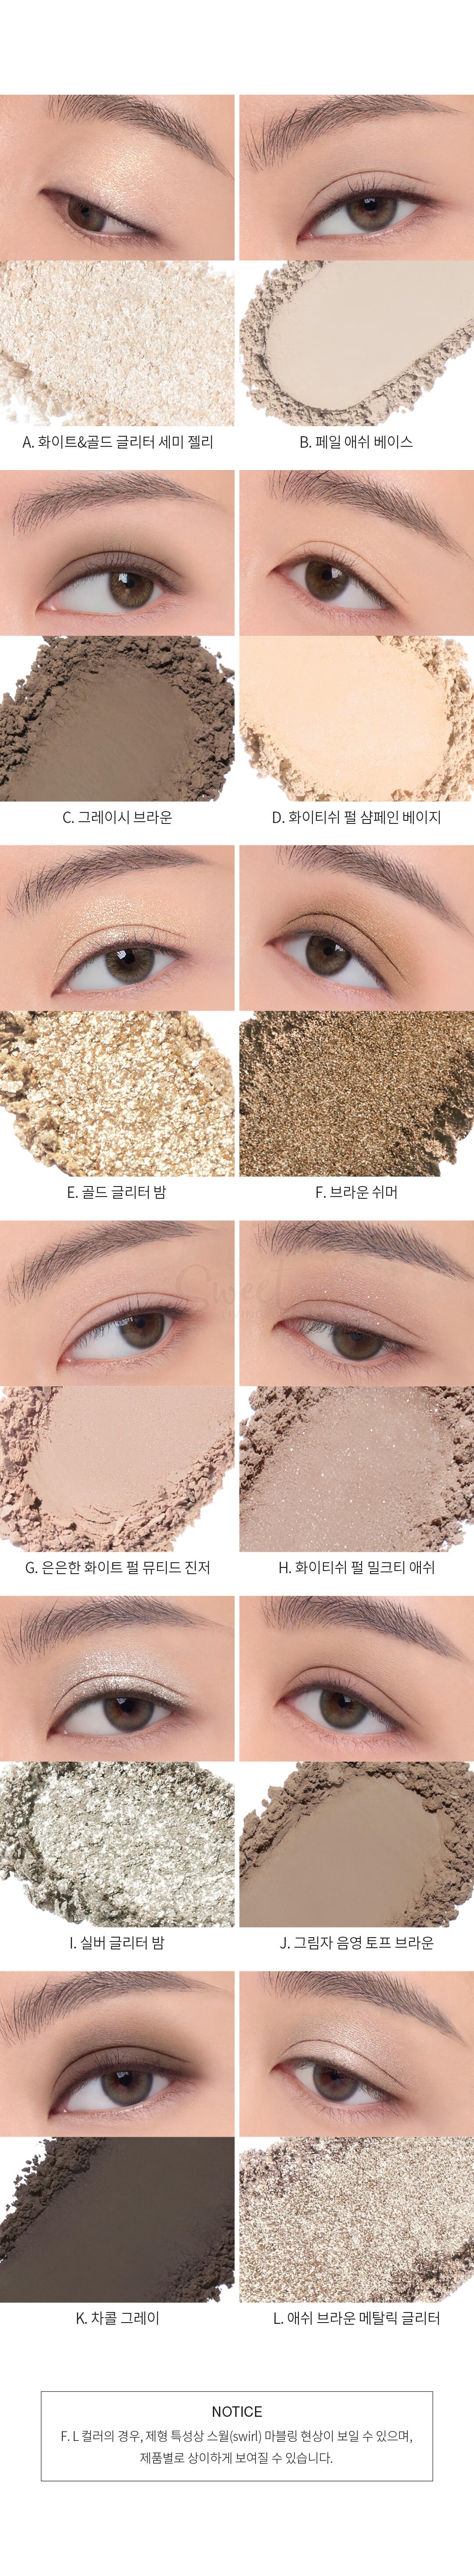 【韩国 3CE】新款12色眼影盘 大地色水泥盘 raw neurals 套装送镜子+眼影刷 -  - 13@ - Sweet Living